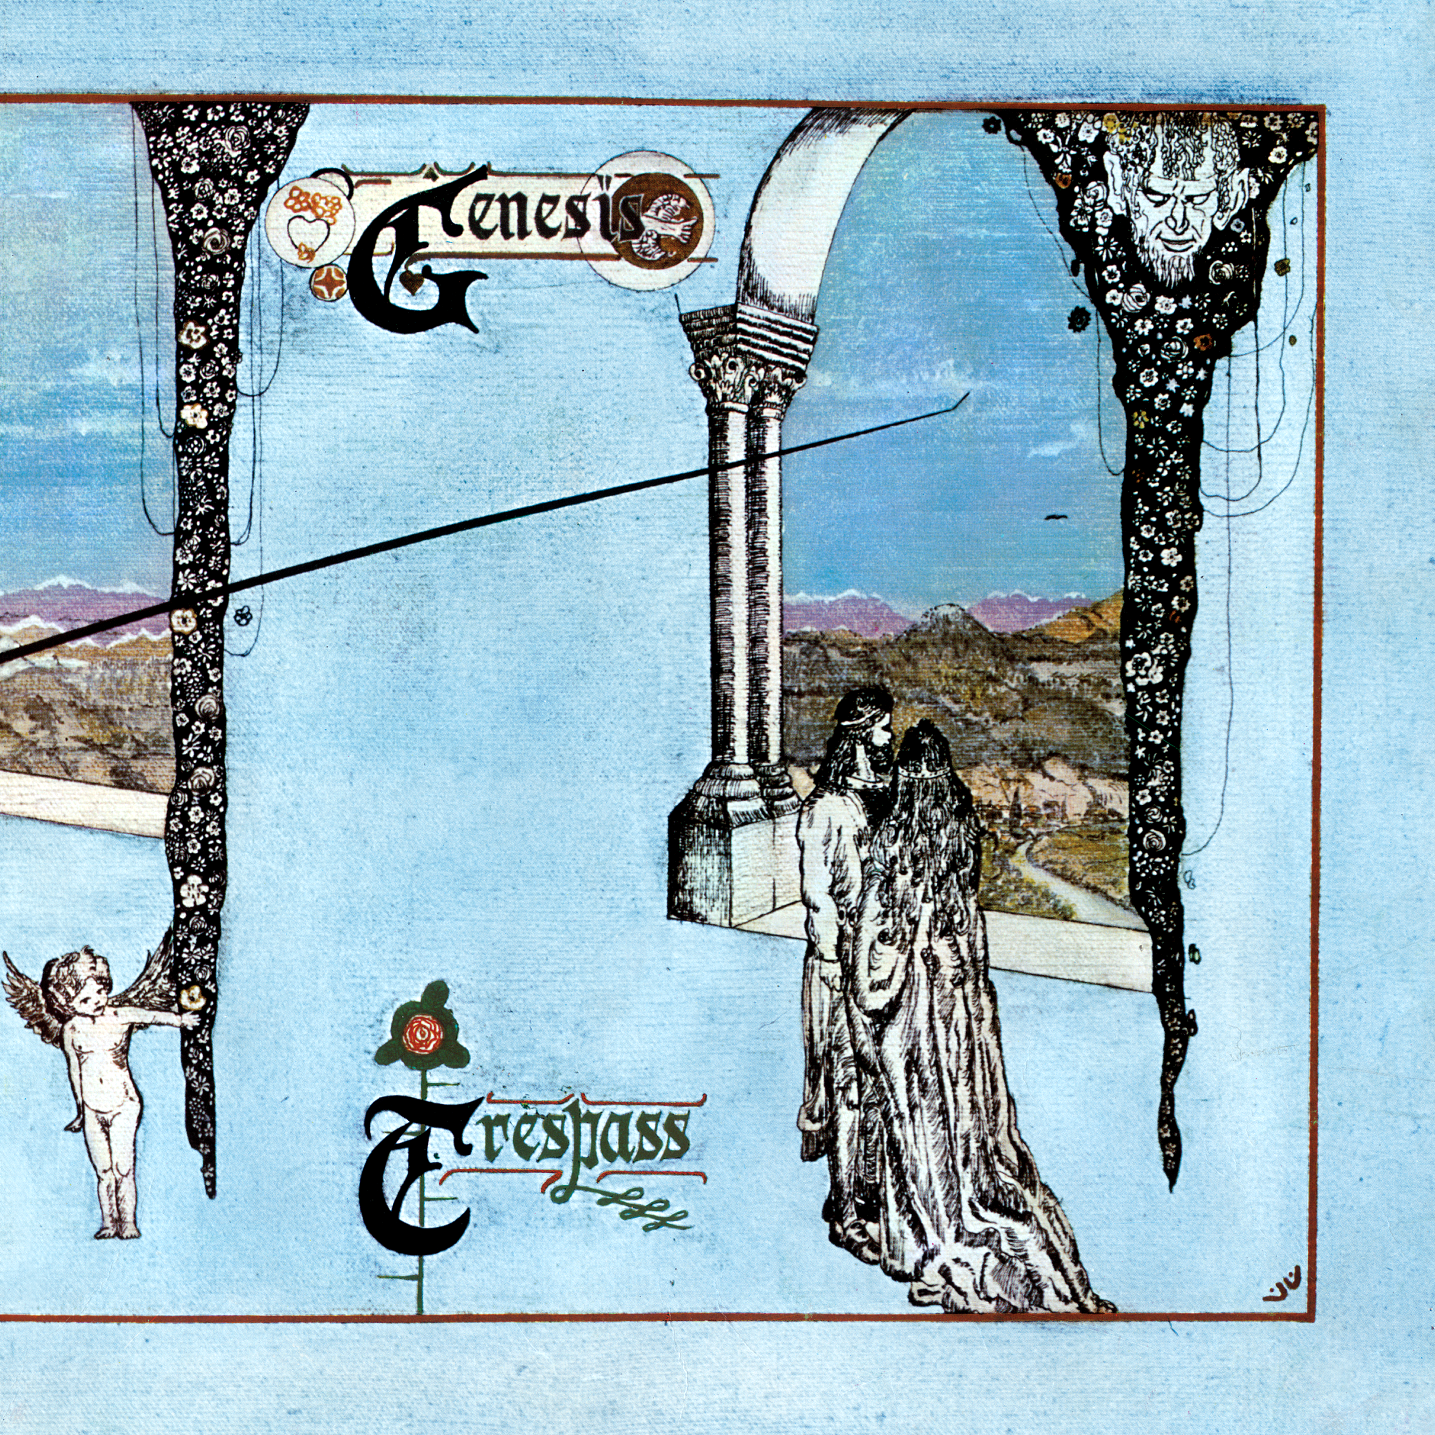 Trespass (2007 Digital Remaster) CD - Genesis